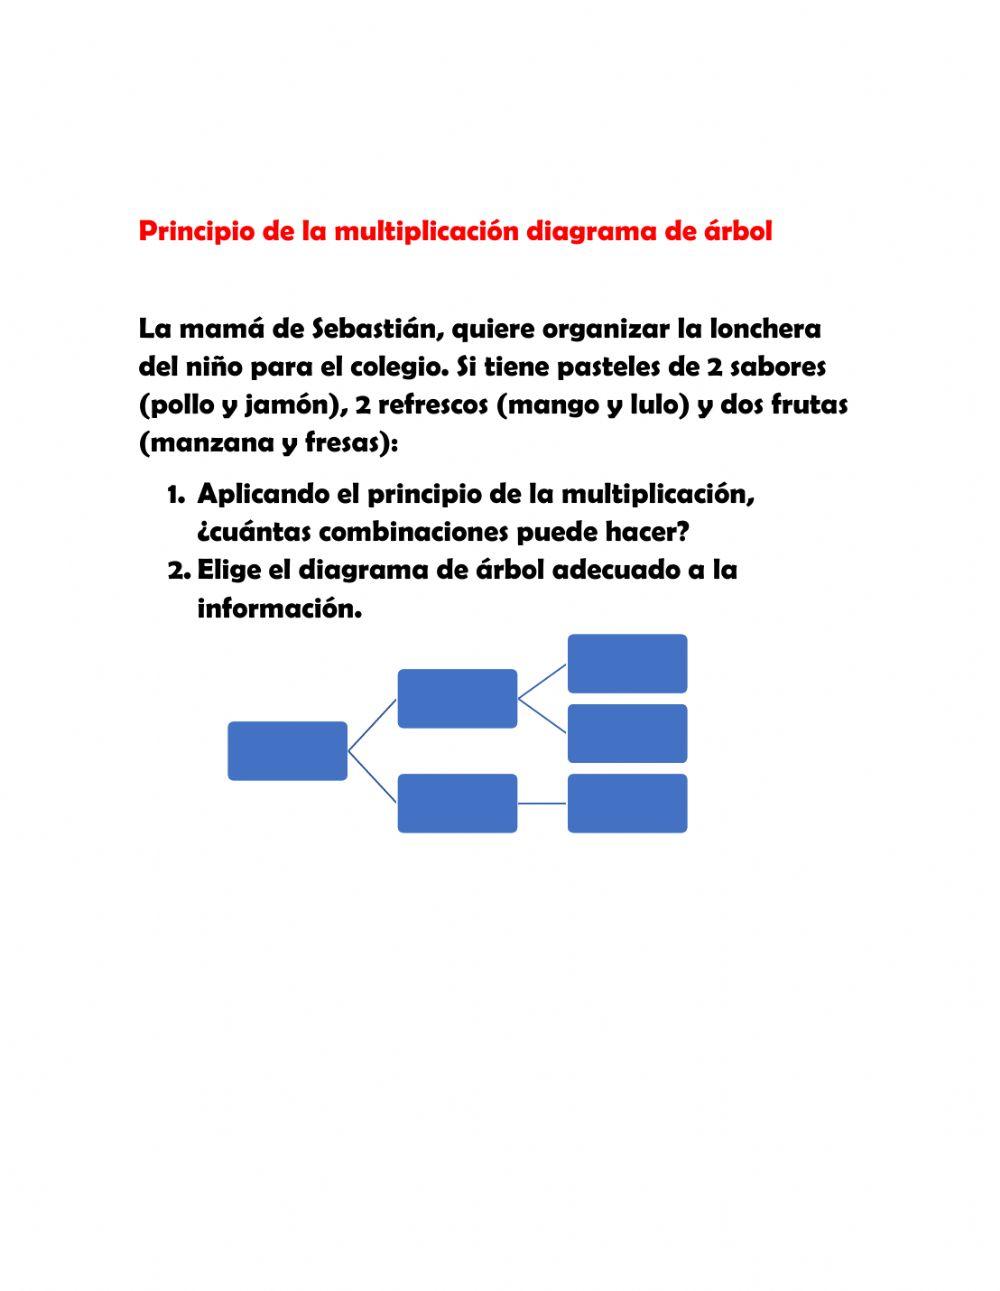 Principio de la multiplicación y diagrama de árbol